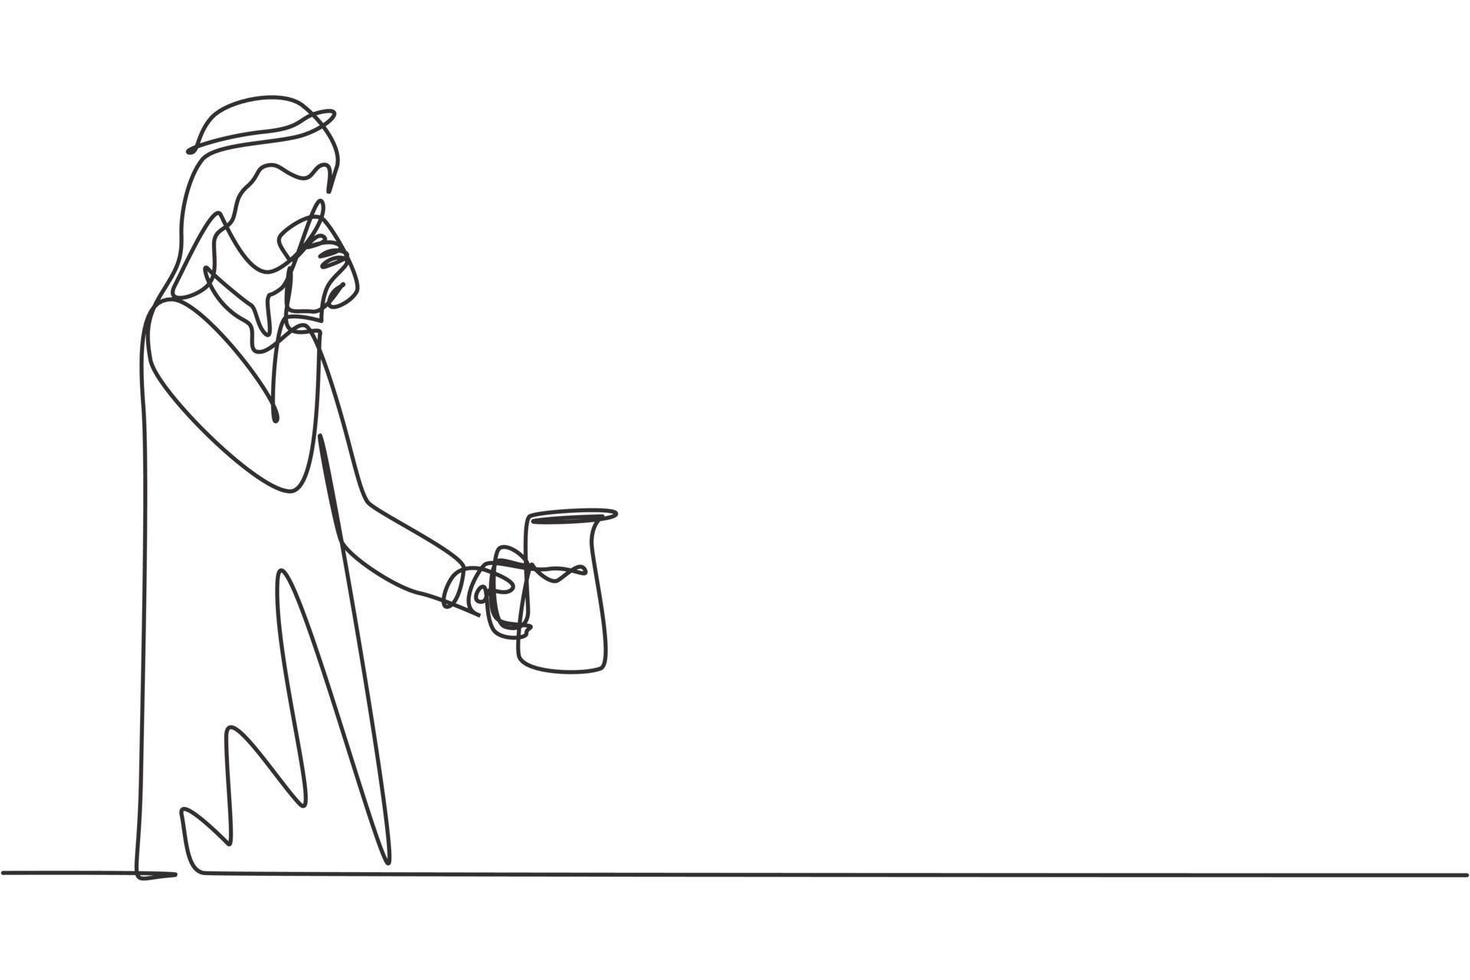 Einzeilige Zeichnung arabischer Mann, der ein Glas in der rechten Hand und einen Krug in der linken Hand hält, um den Durst nach der Aktivität zu löschen. genieße das Leben. moderne durchgehende Linie zeichnen Design-Grafik-Vektor-Illustration vektor